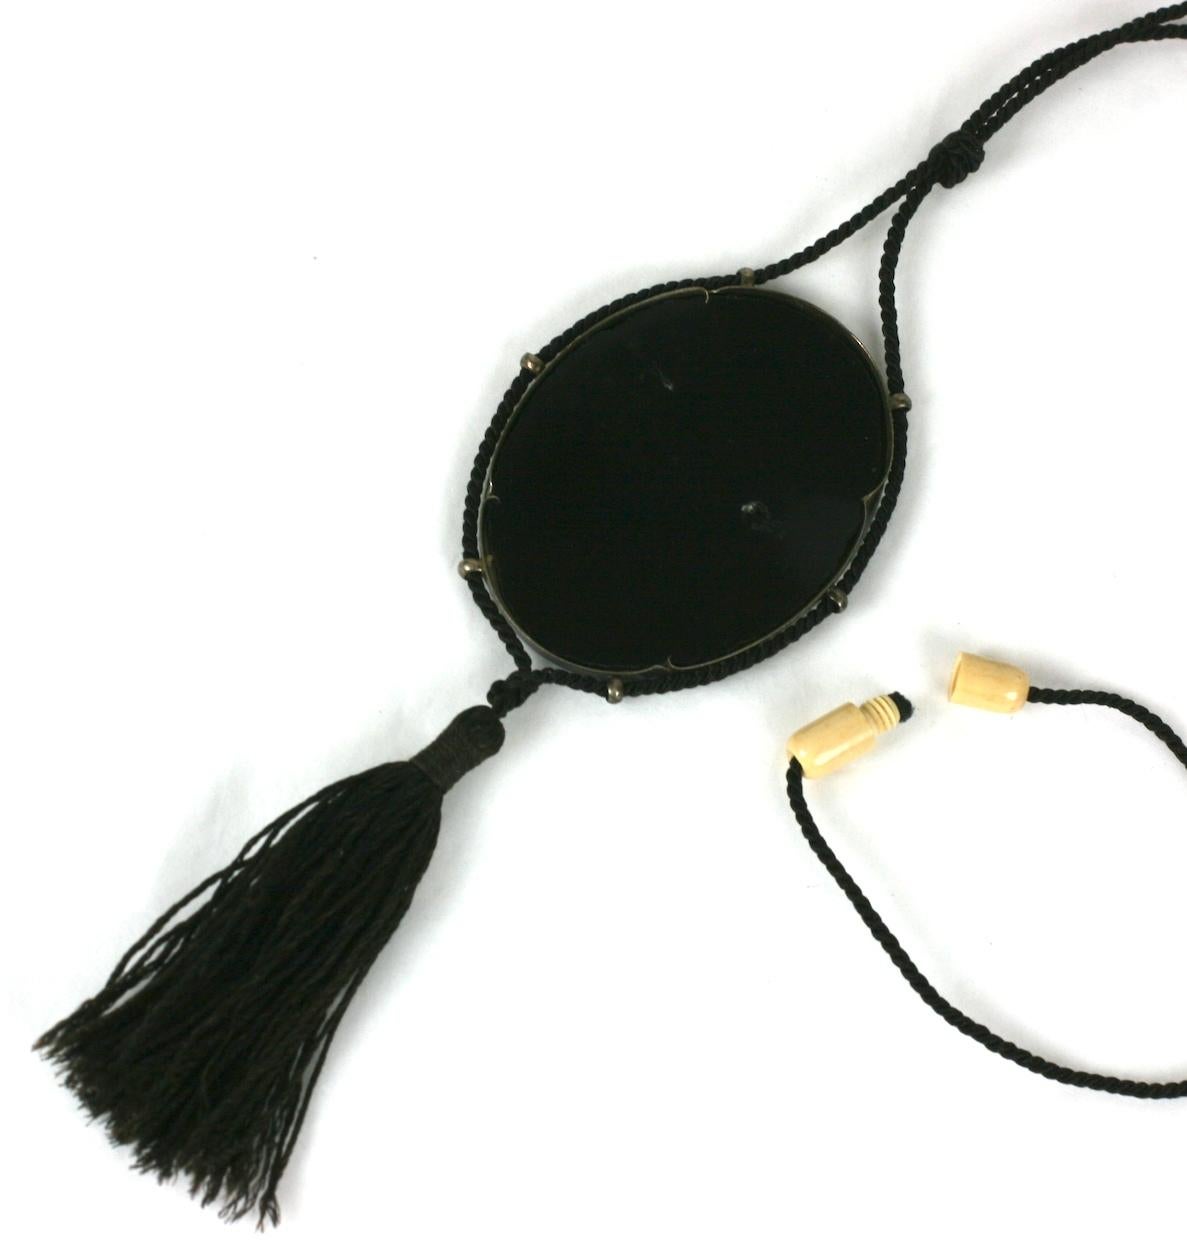 Französisch Art Deco Japonesque Anhänger Halskette von fein geschnitzten faux Elfenbein farbigen Zelluloid durch eine ovale Platte aus schwarzem Bakelit zurück. Eingefasst in einen versilberten Metallrahmen mit sechs runden Schlaufen, aufgehängt an